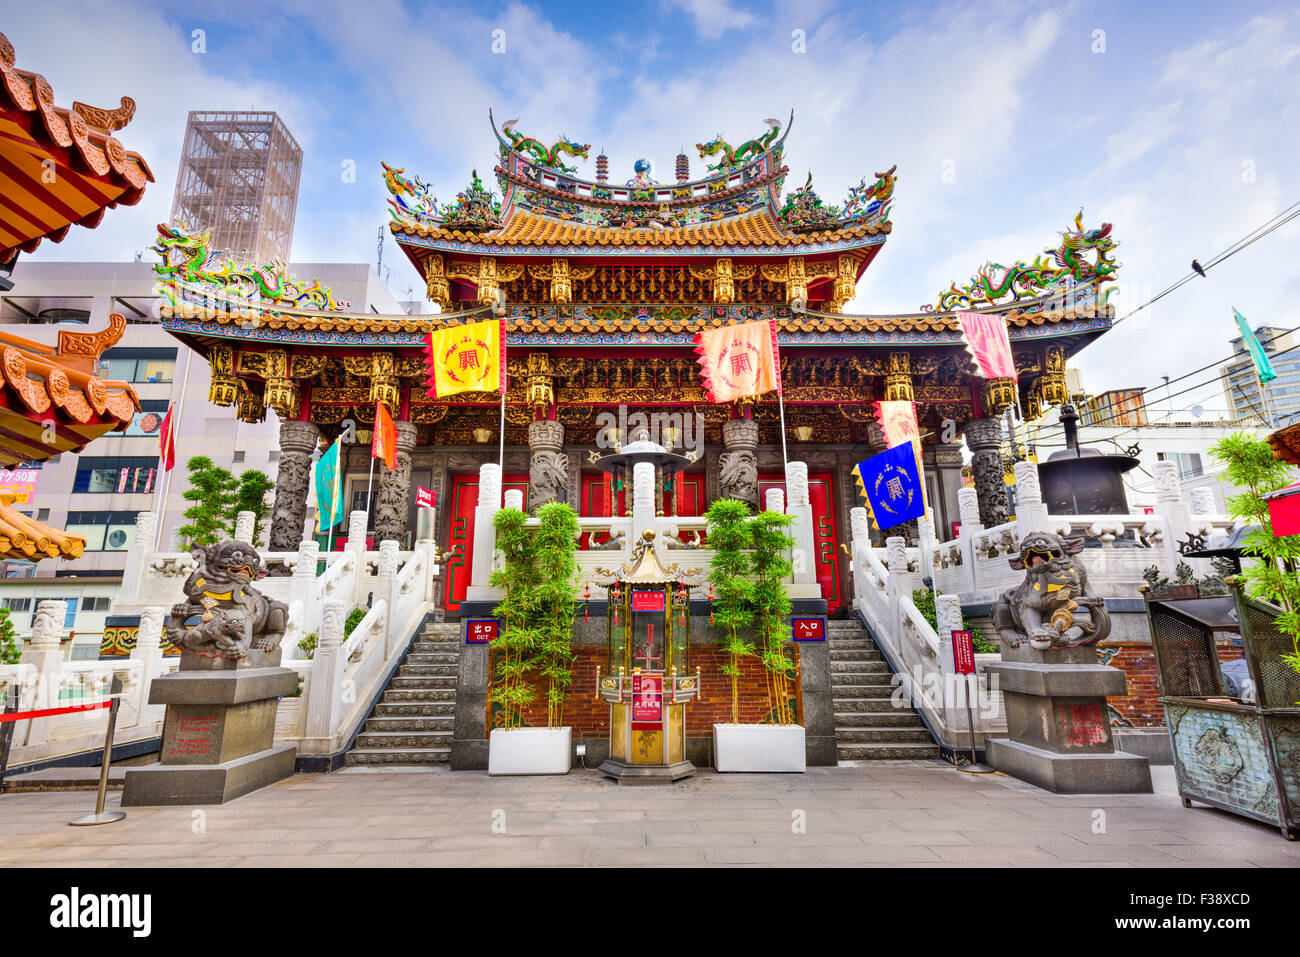 Kwan Tai Temple in Yokohama's Chinatown district. Stock Photo